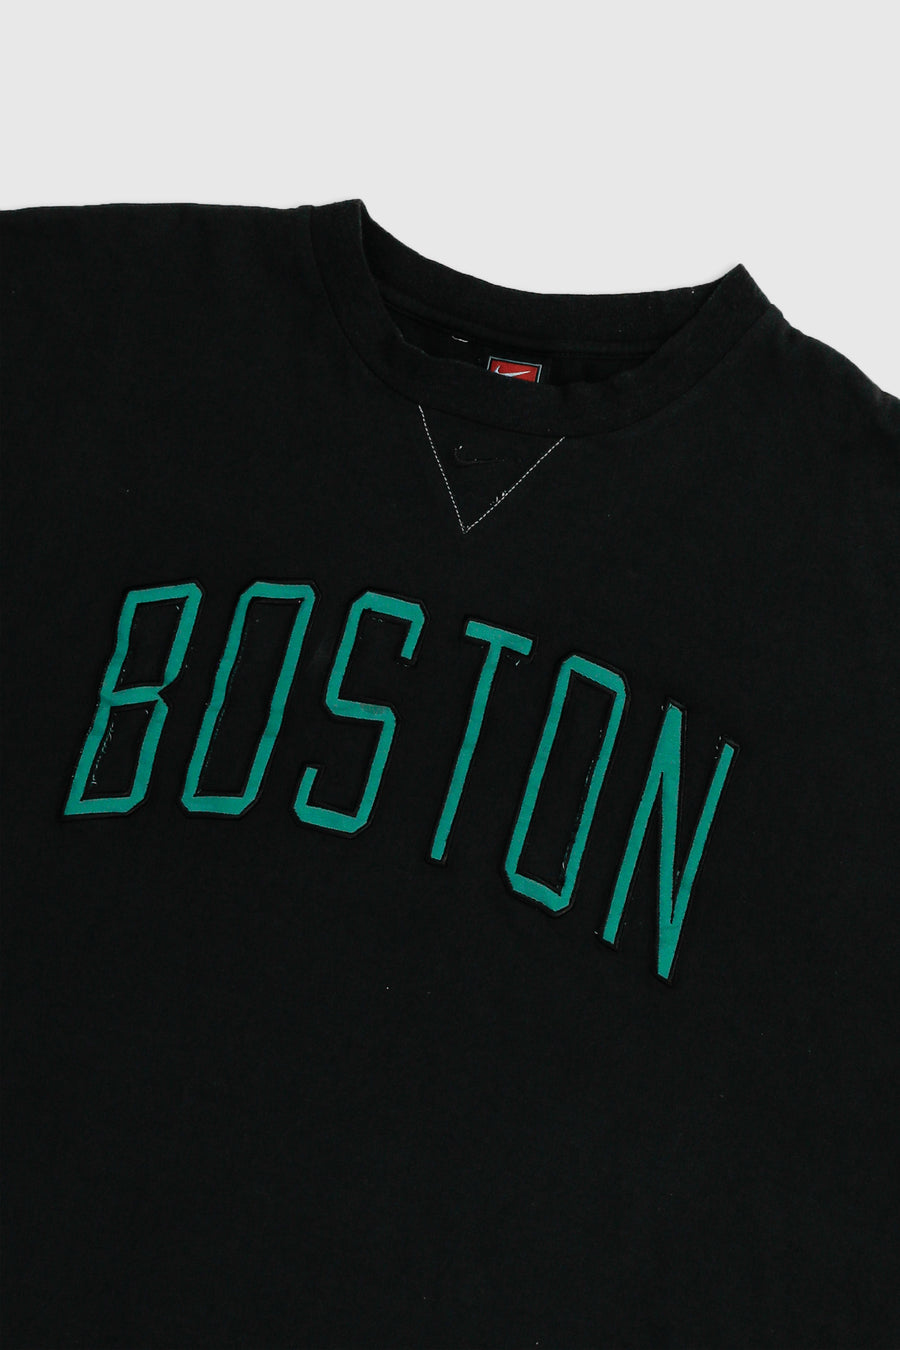 Vintage Nike Boston Celtics Tee - XL